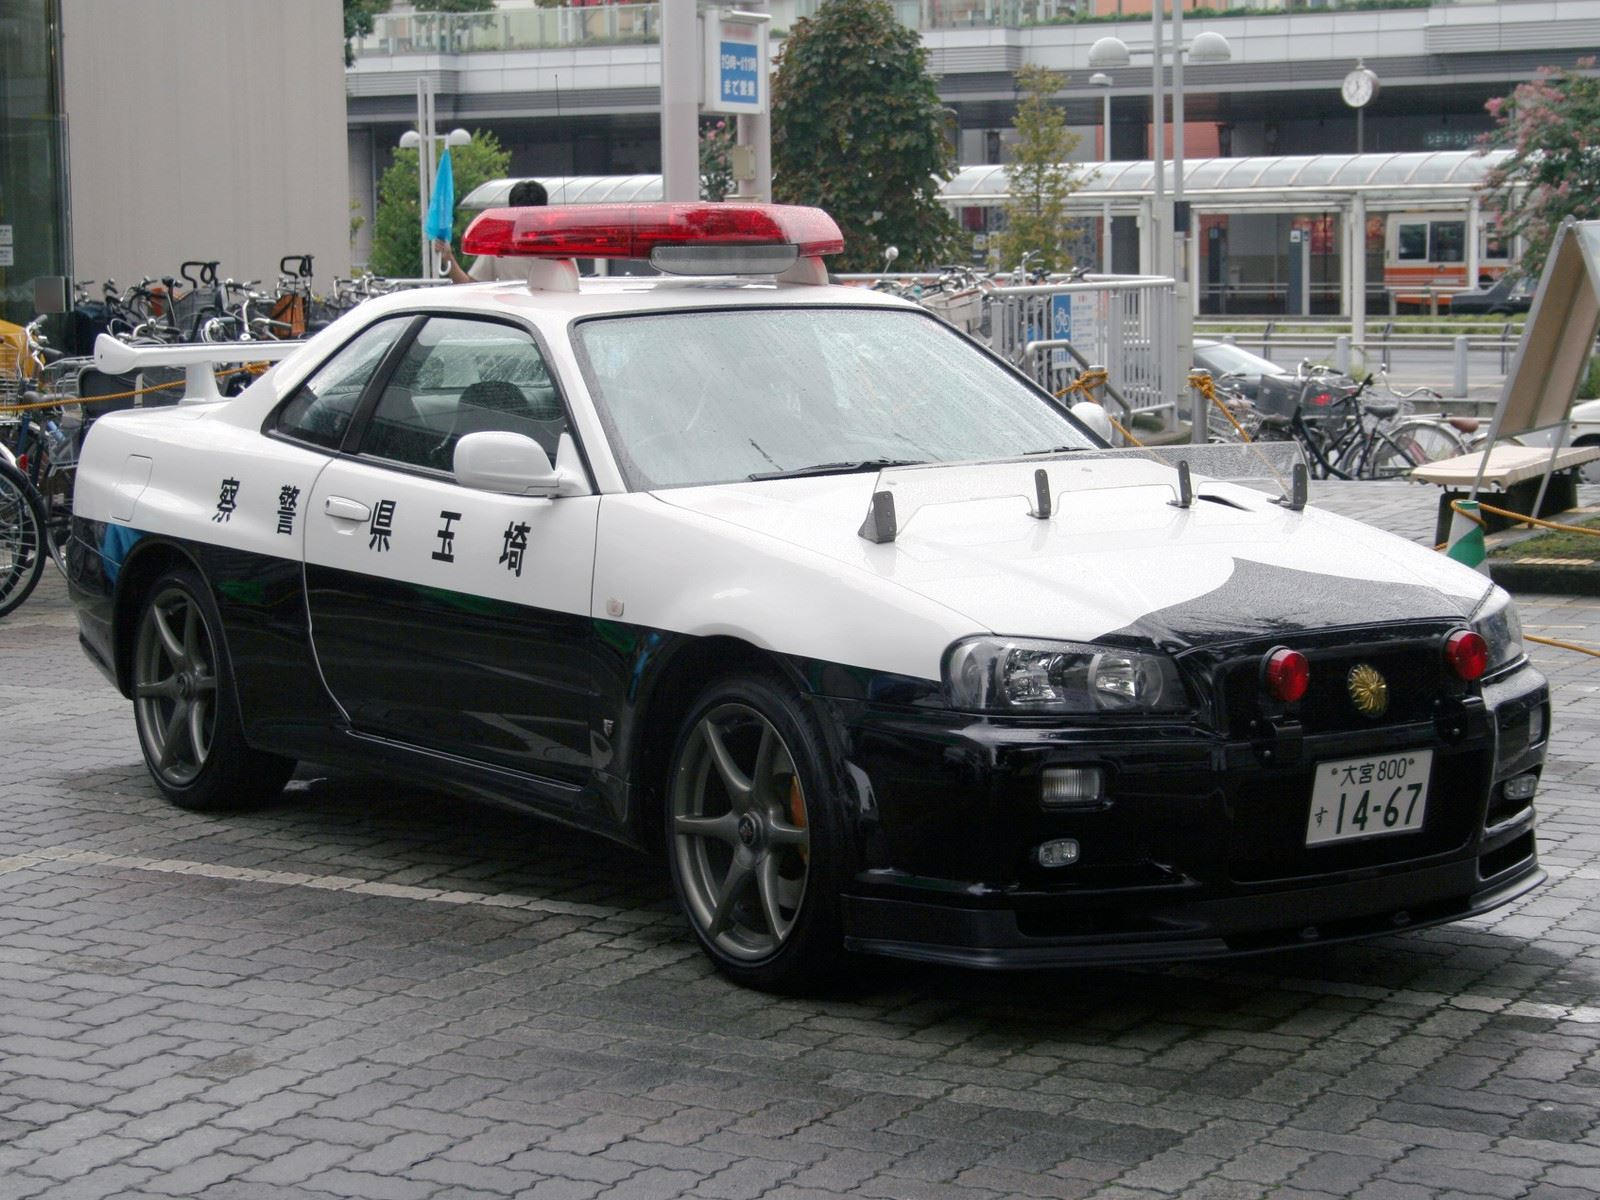 "بالصور" أكثر 10 سيارات شرطة تميزا حول العالم 14